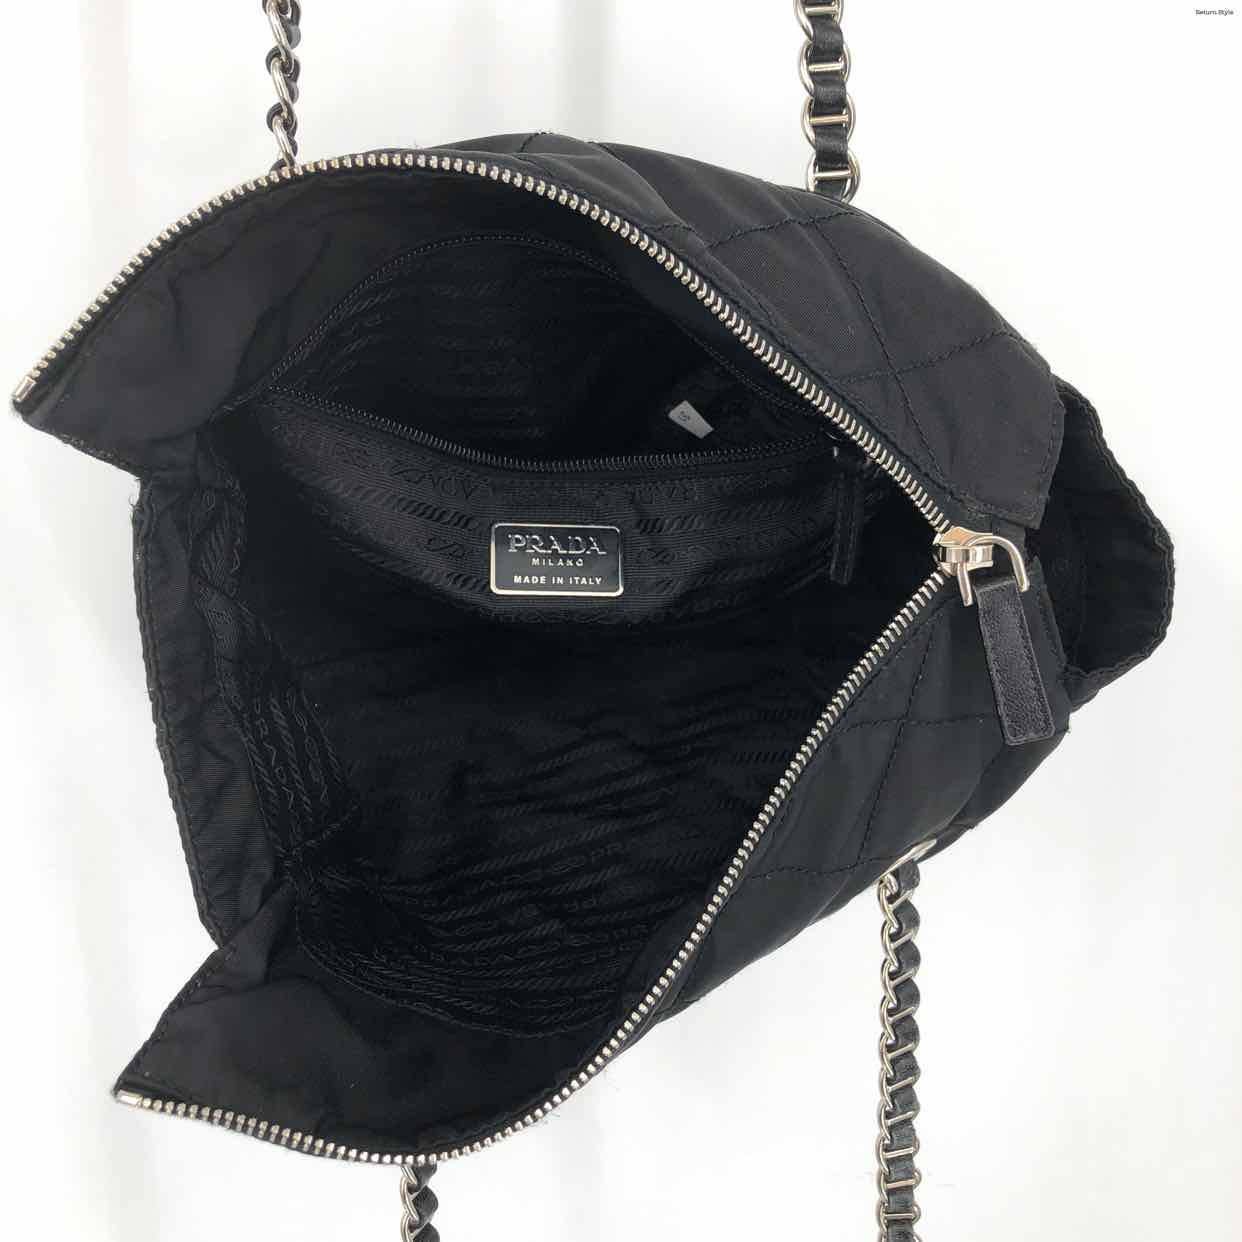 Prada | Bags | Prada Milano Dal 913 Shoulder Bag | Poshmark